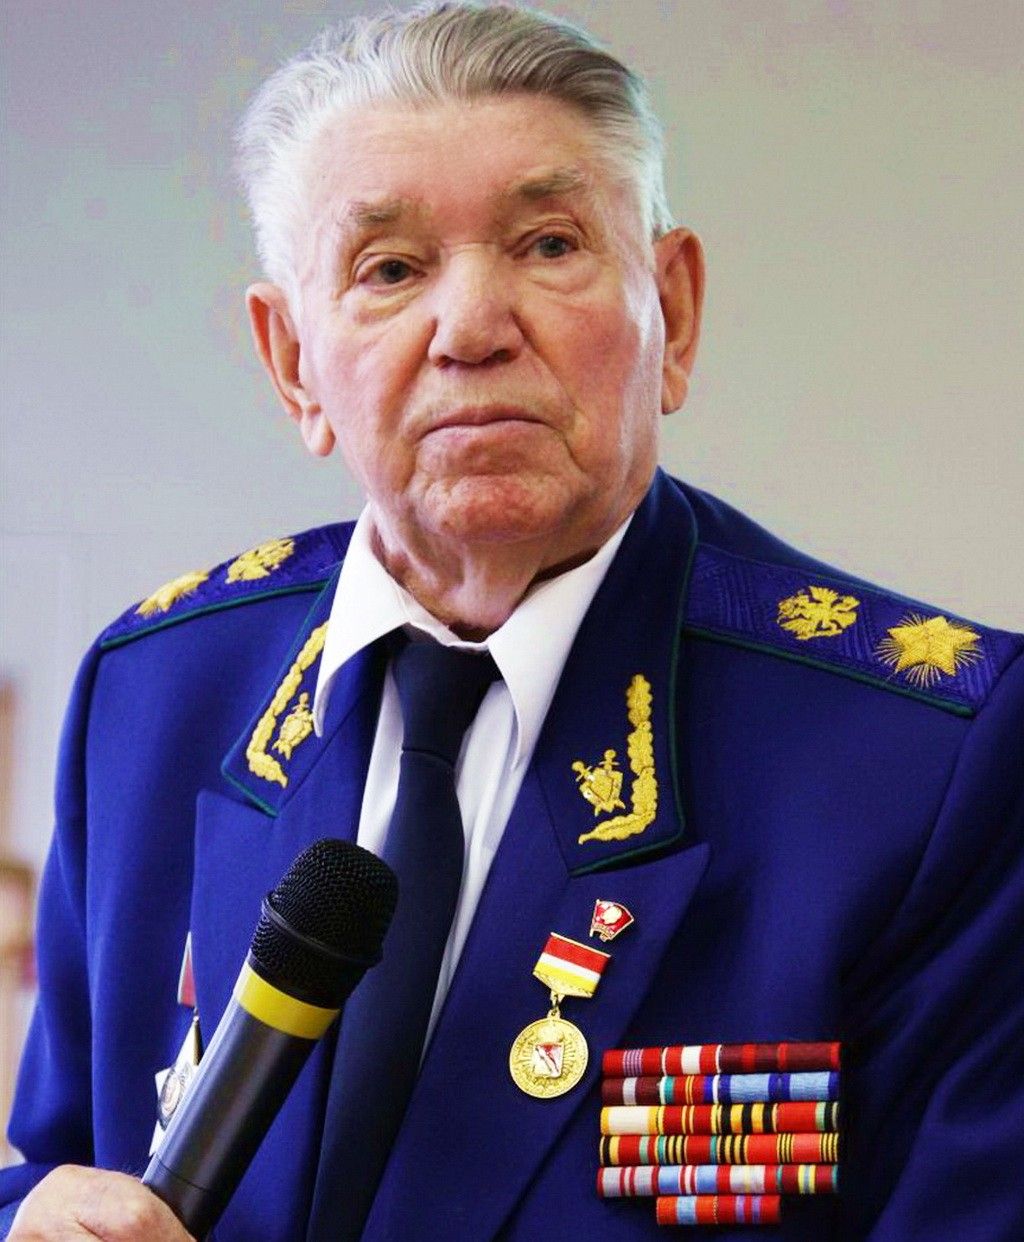 Александр Сухарев — Действительный государственный советник юстиции, советник Генерального прокурора РФ